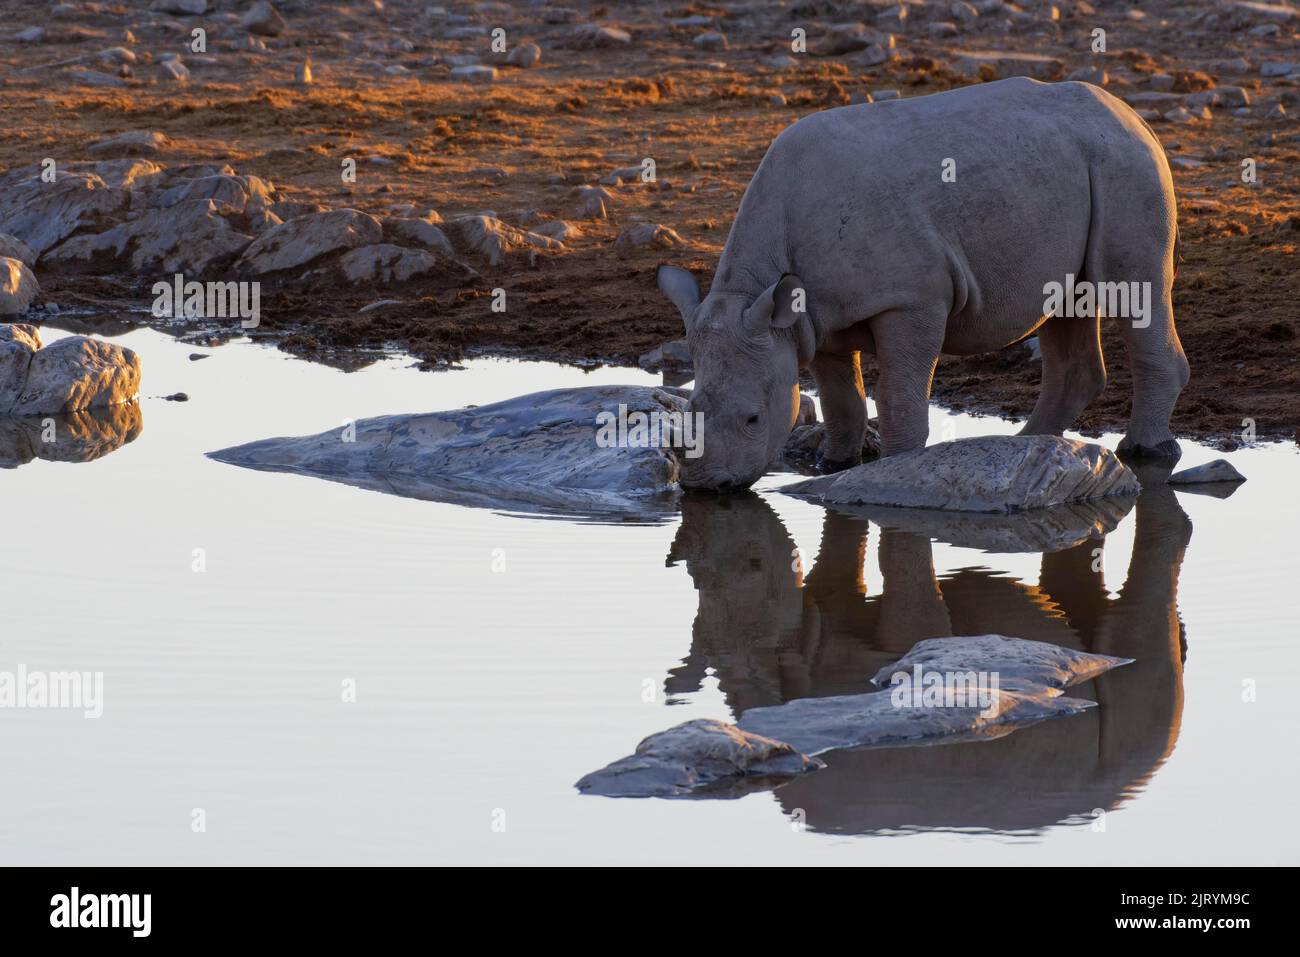 Rhinocéros noir (Diceros bicornis), jeune, réfléchissant dans l'eau, boire au trou d'eau, lumière du soir, Parc national d'Etosha, Namibie, Afrique Banque D'Images